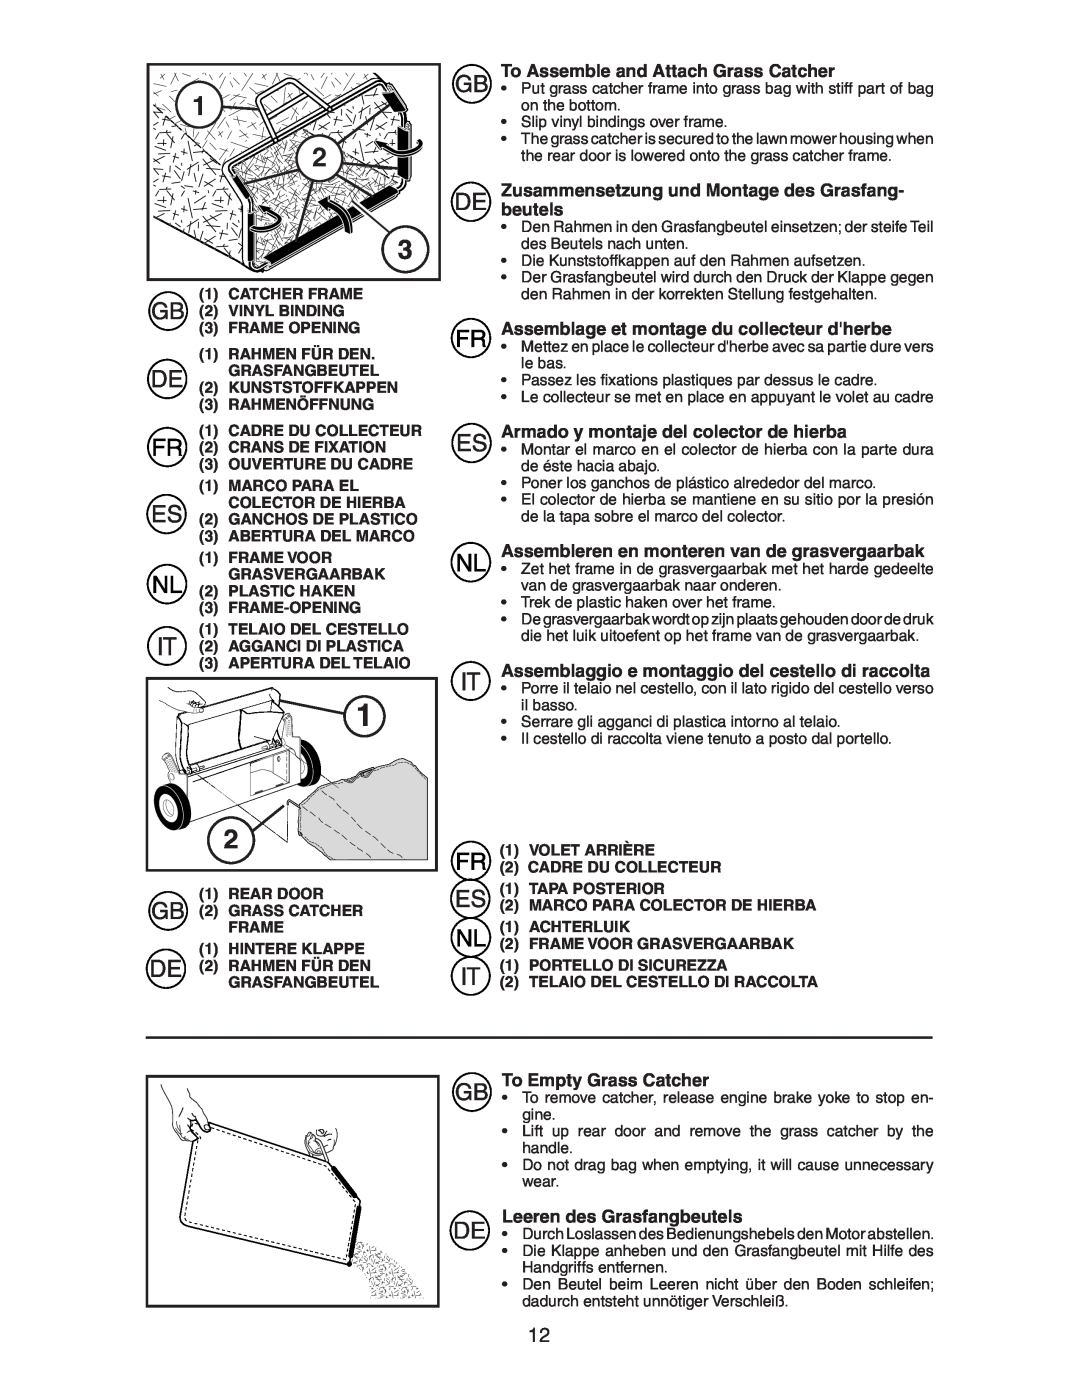 McCulloch M7053D instruction manual To Assemble and Attach Grass Catcher, Zusammensetzung und Montage des Grasfang- beutels 